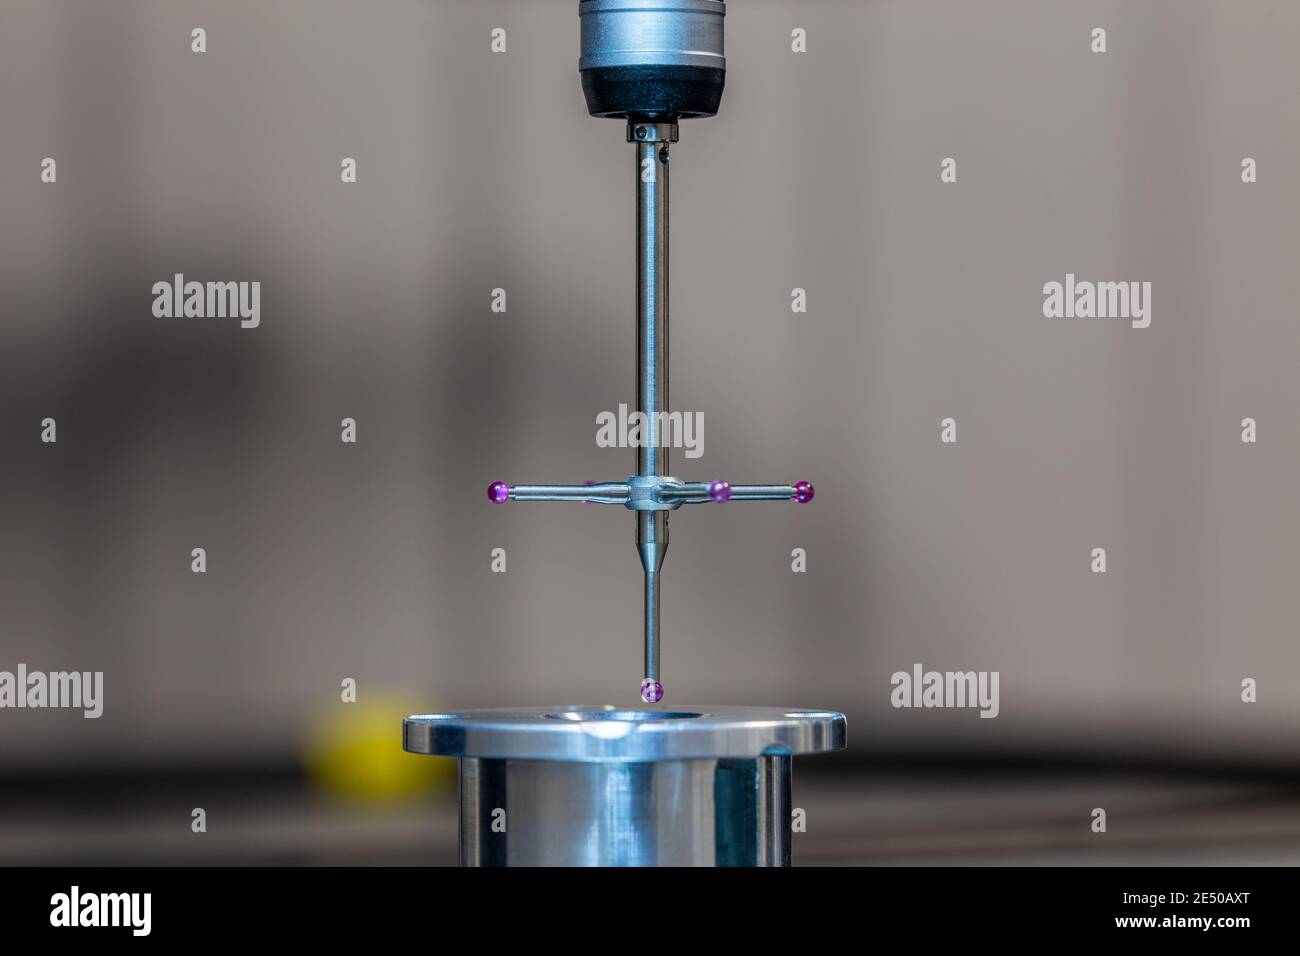 CMM - machine de mesure de coordonnées - sonde de contact mesurer la pièce  d'échantillon en aluminium sur la surface de la table en verre. Contro  métrologique de production haute précision Photo